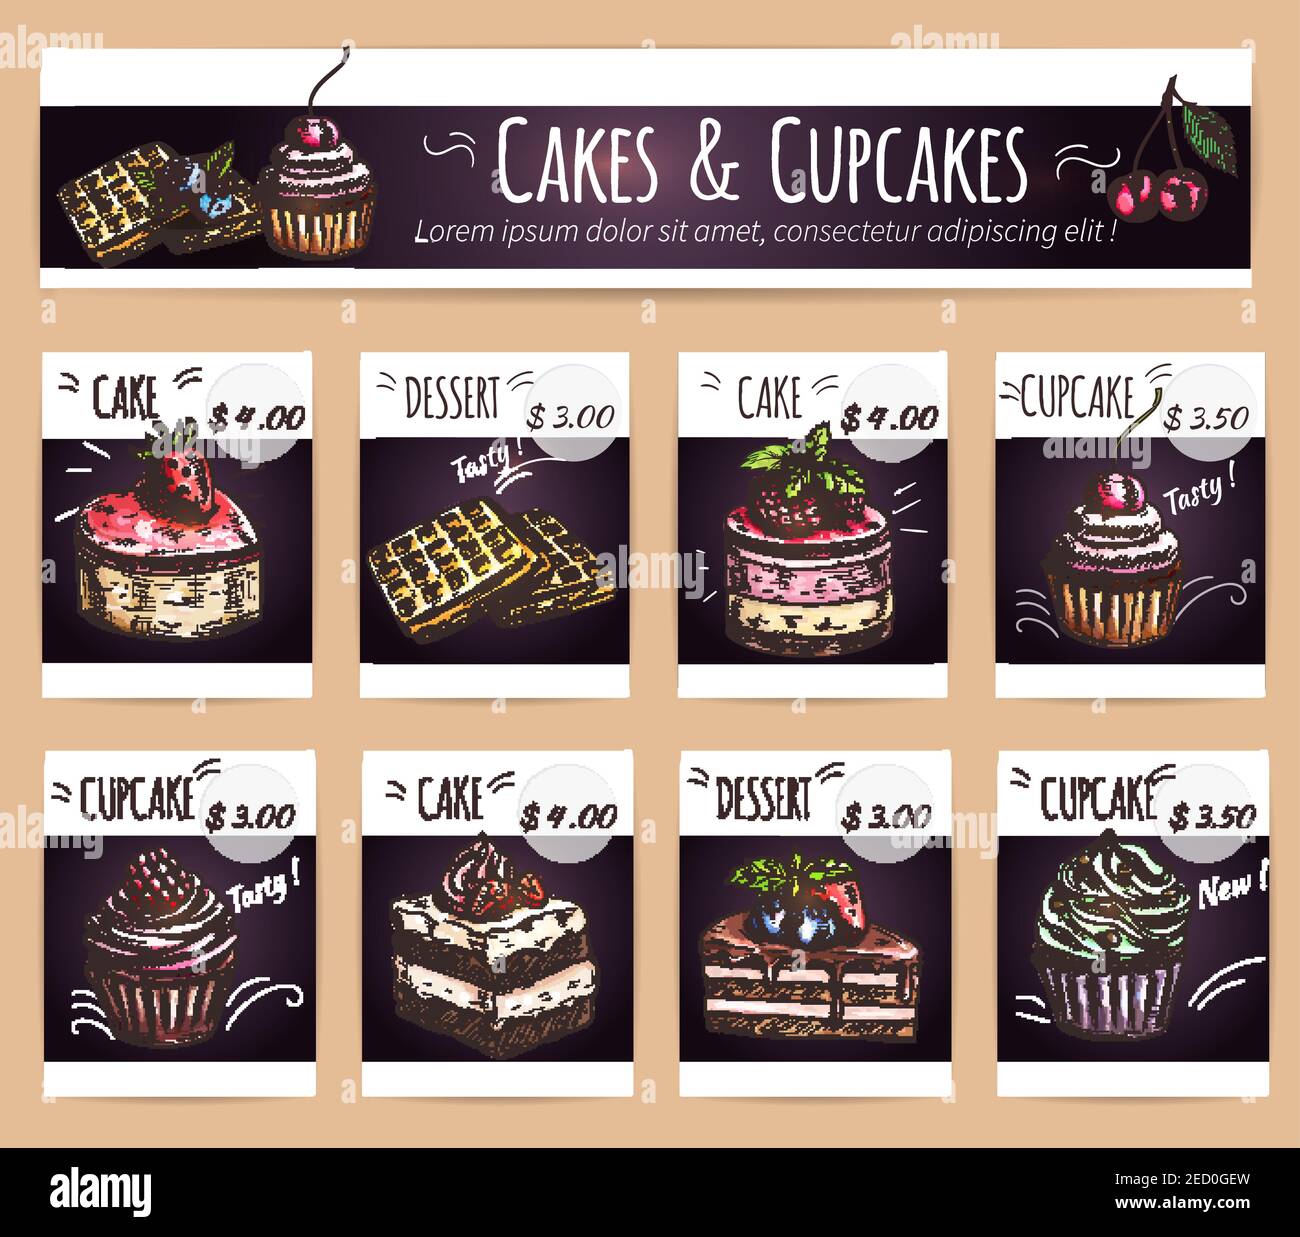 Royal Pro Cake & Baker's, Kandivali East order online - Zomato